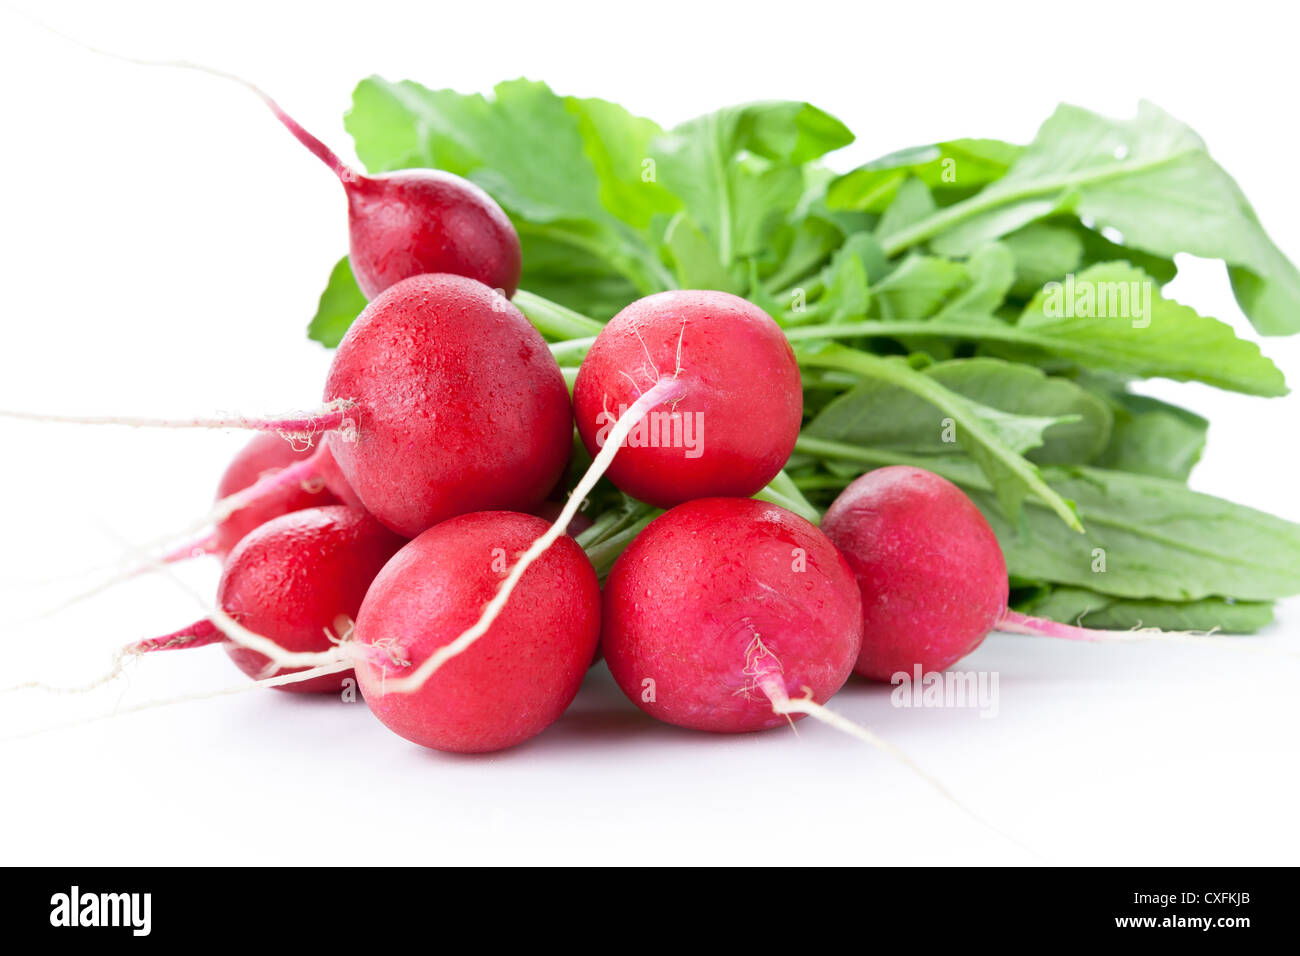 Fresh bunch of radish isolated on white background Stock Photo